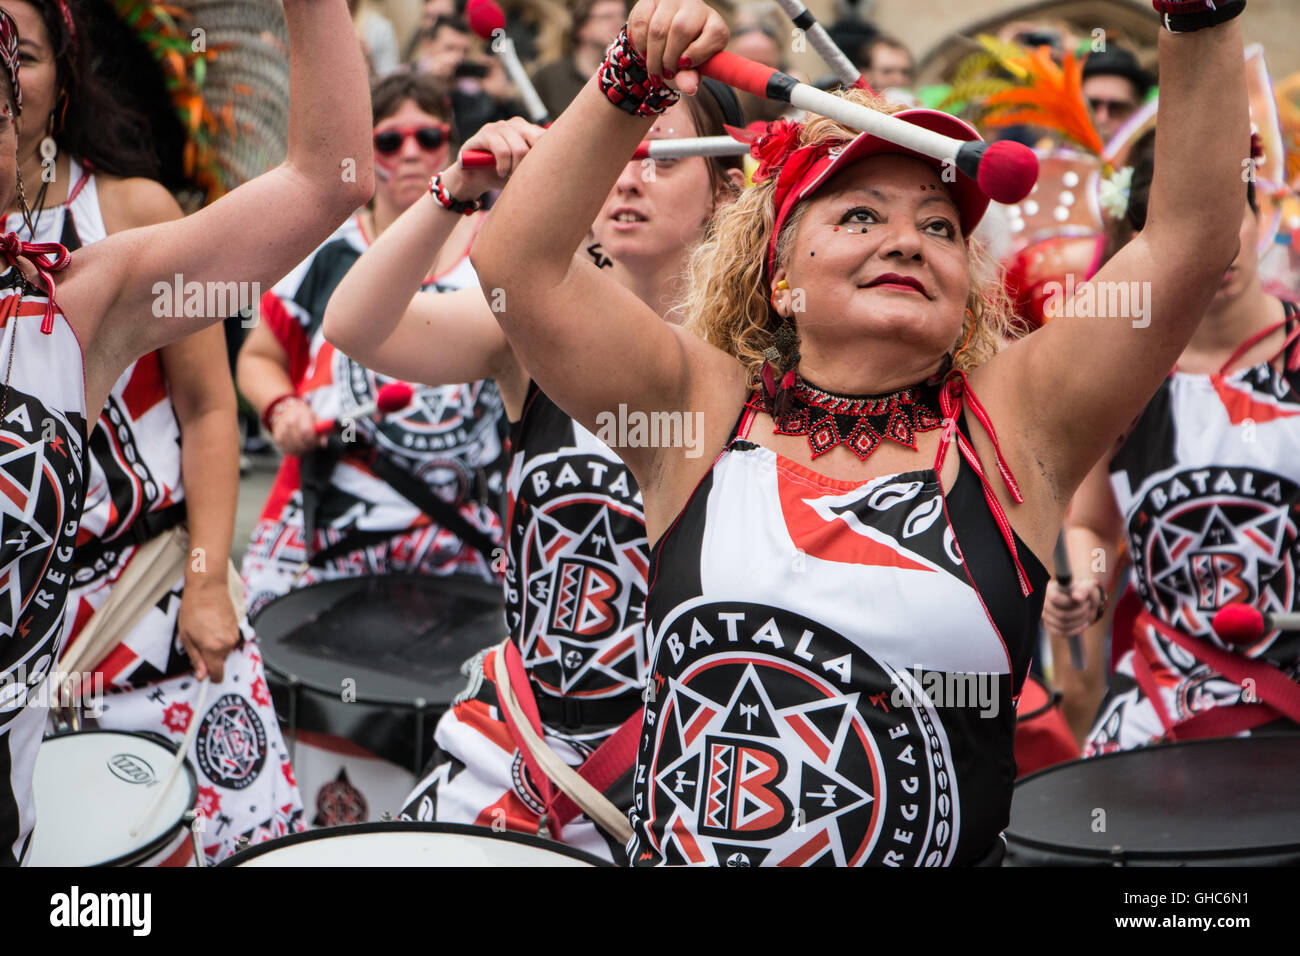 Batala batteristi prendendo parte al 2016 Bath Street Carnevale, REGNO UNITO Foto Stock